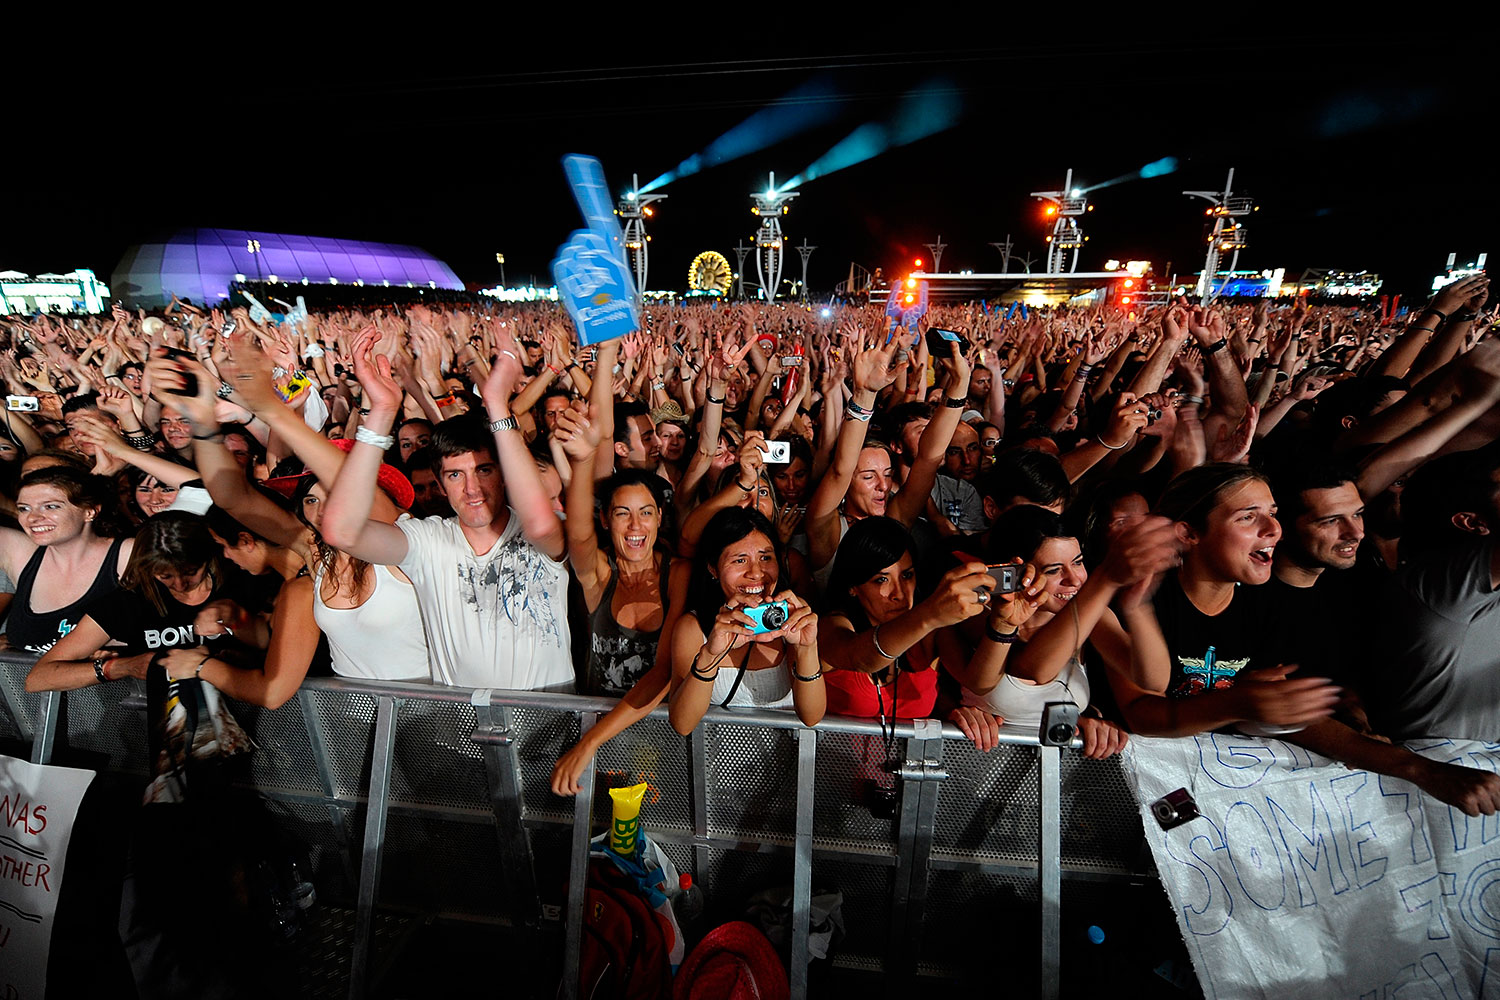 Madrid y Argentina dicen adiós al festival Rock in Rio por la coyuntura económica actual